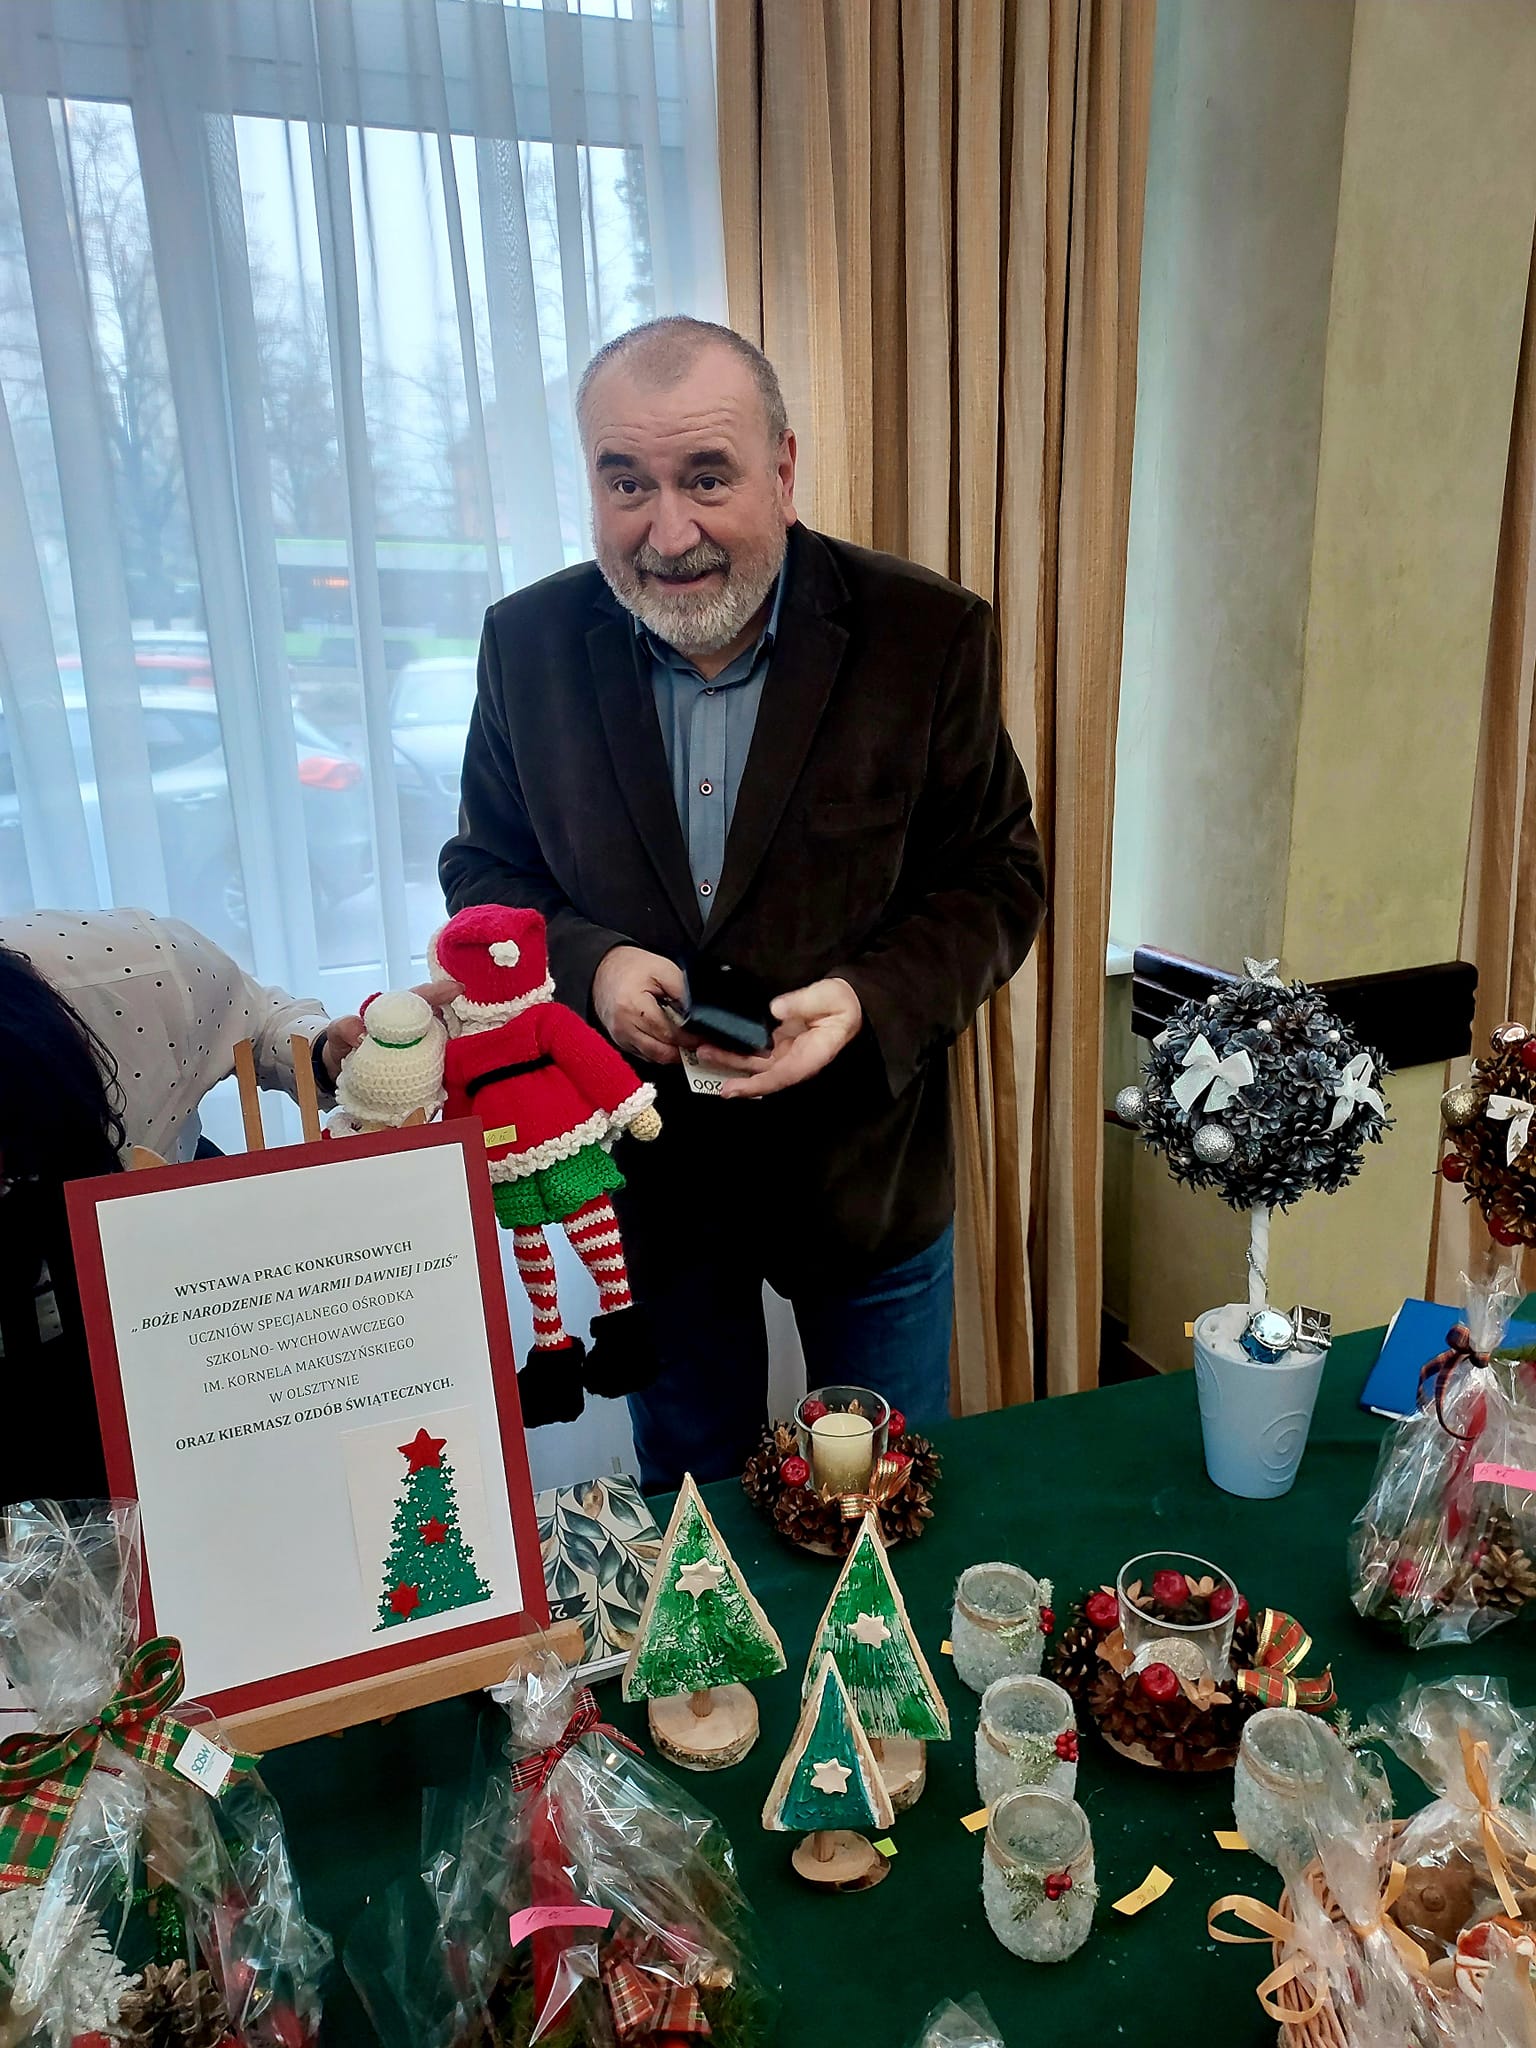 Herr Direktor der Schuljugendherberge in Olsztyn kauft Weihnachtsschmuck.